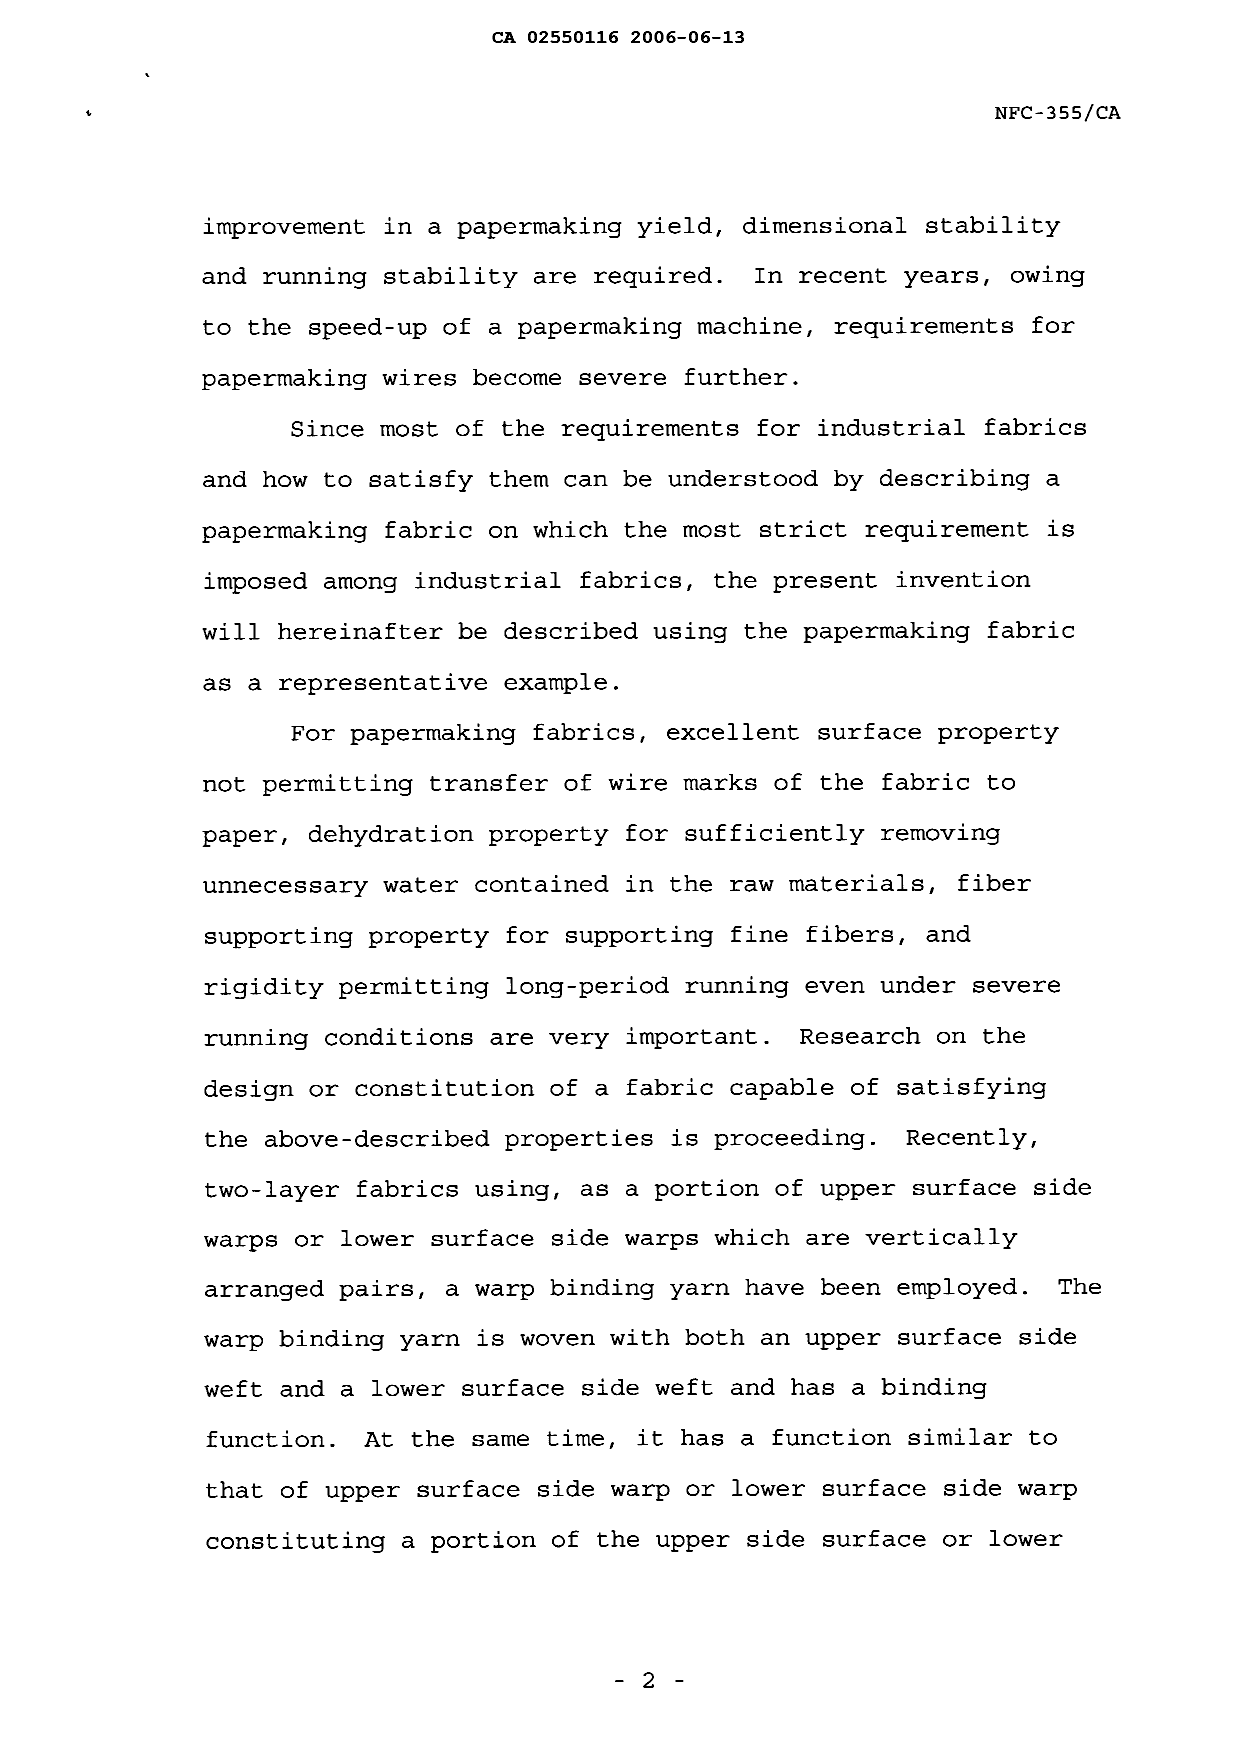 Canadian Patent Document 2550116. Description 20060613. Image 2 of 62